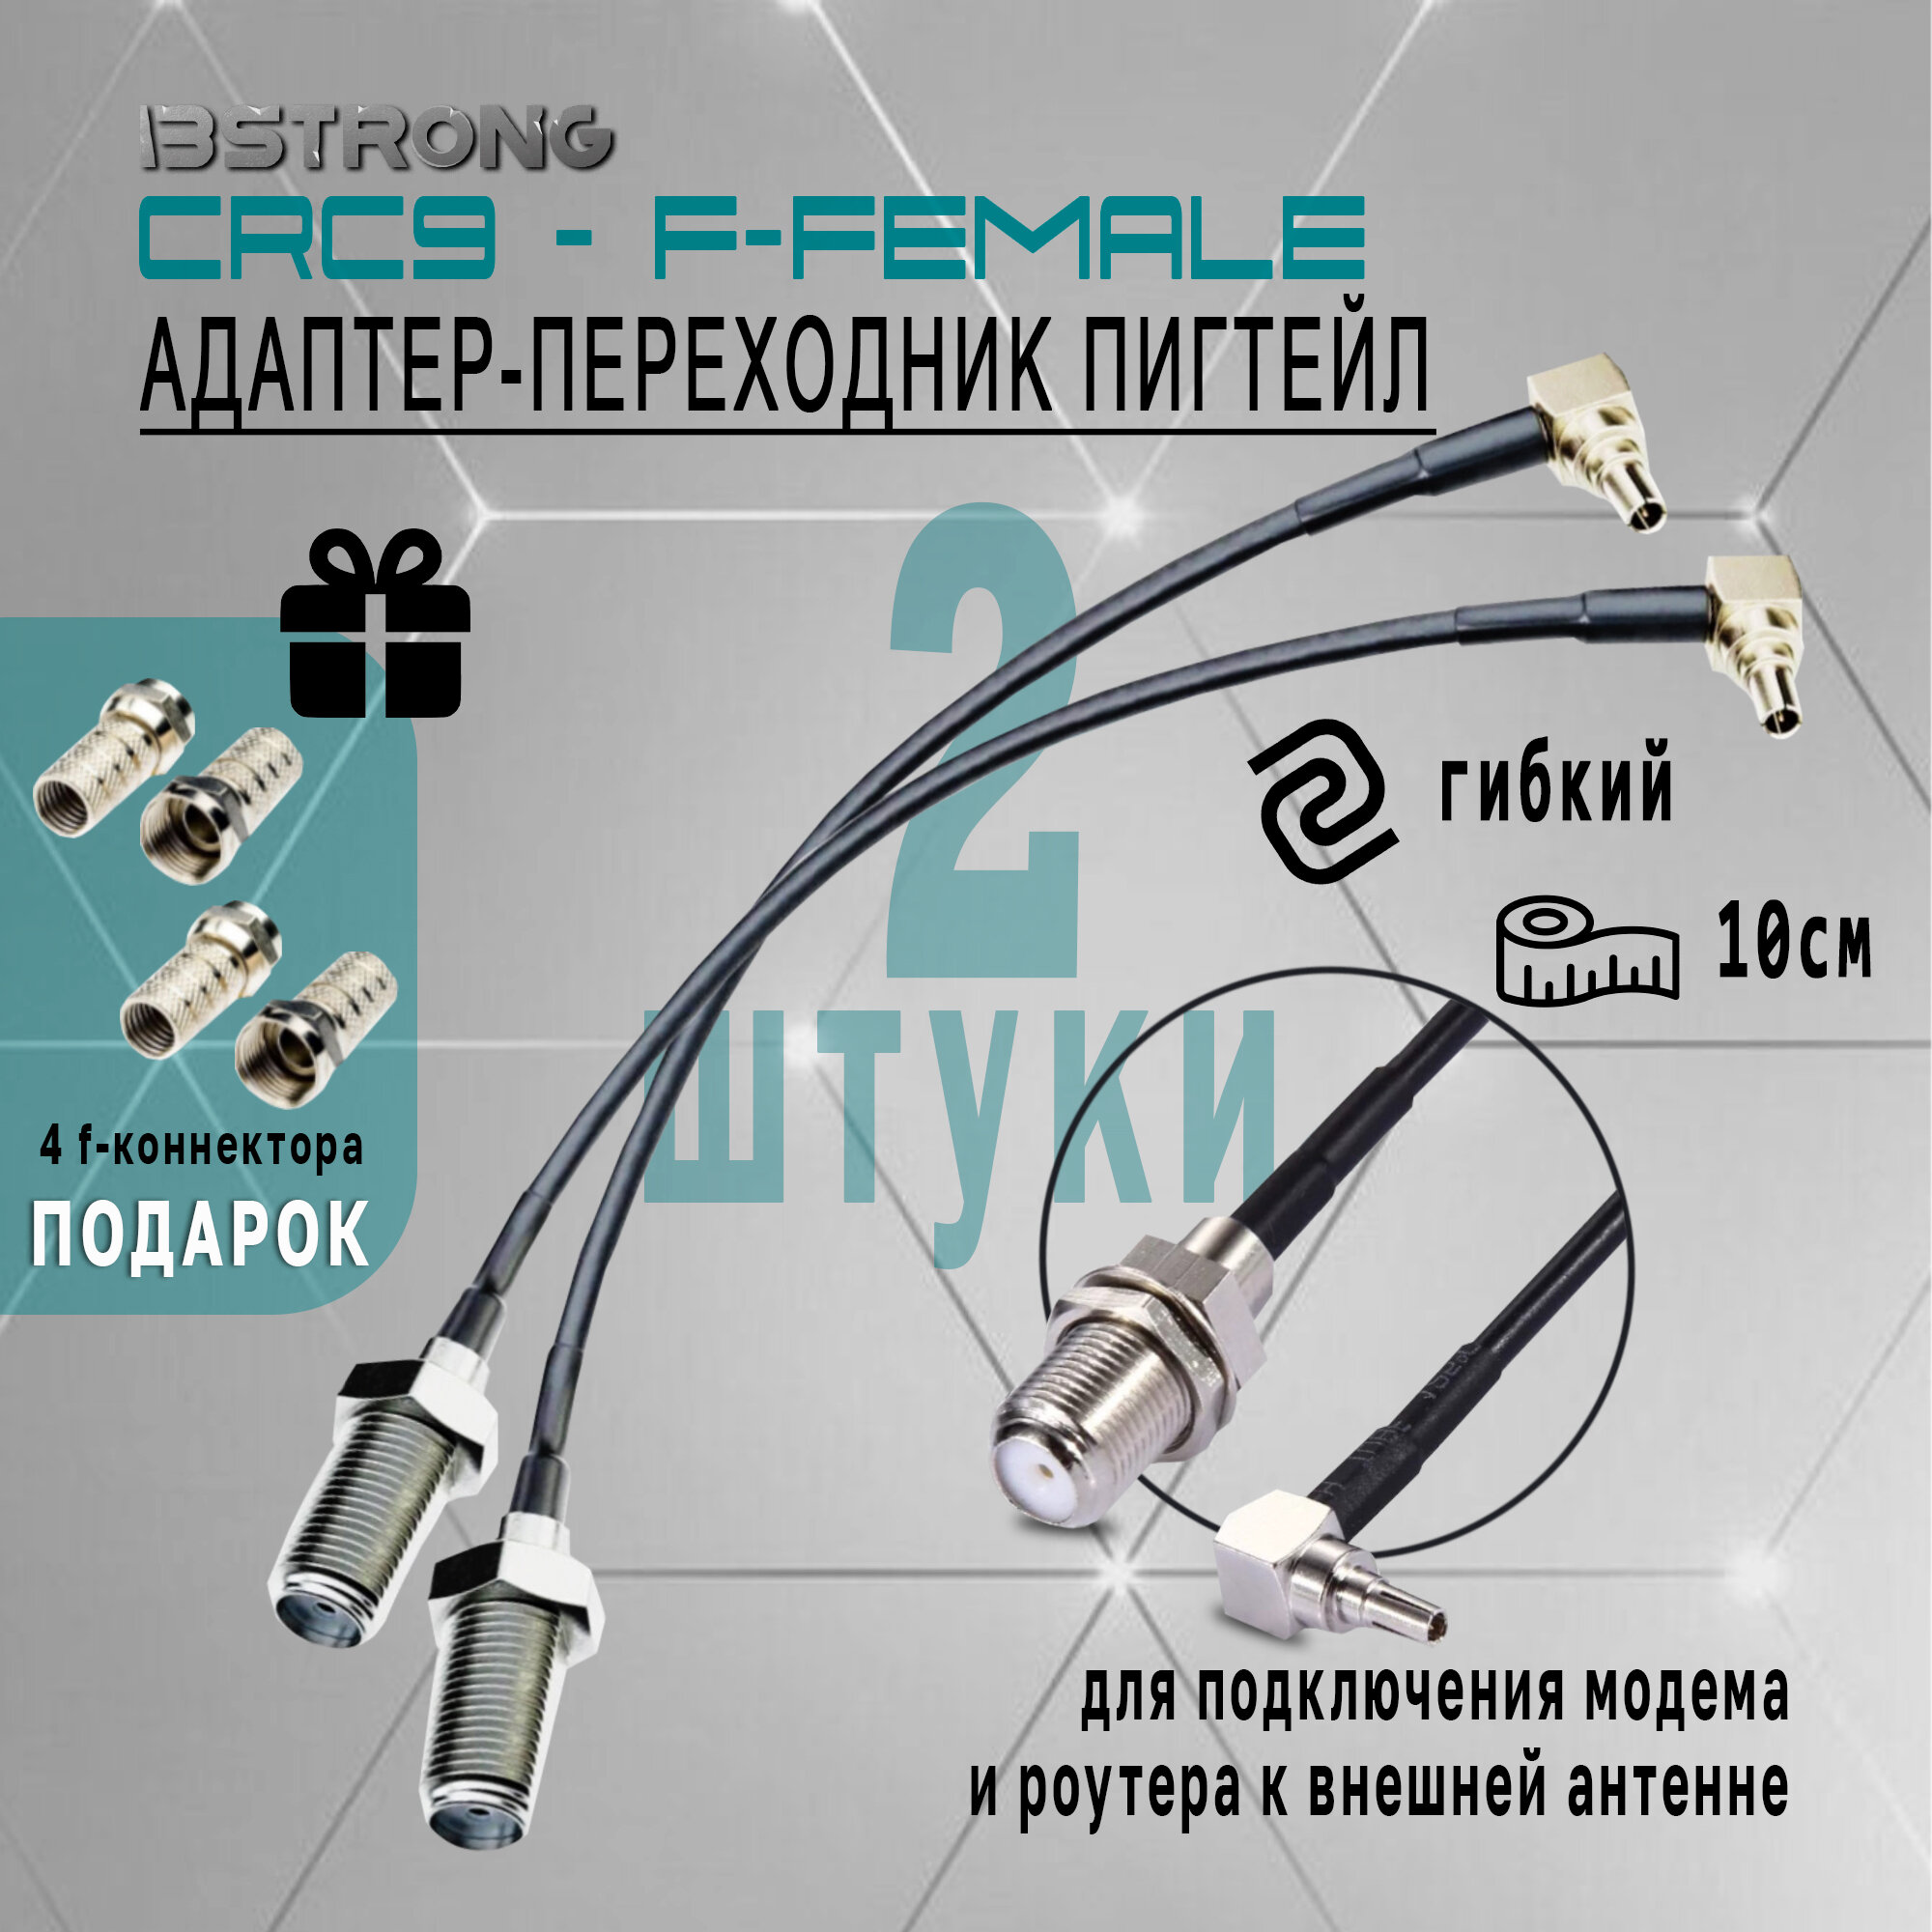 Пигтейл CRC9-F-female (2 шт), 10 см + 4 коннектора в подарок